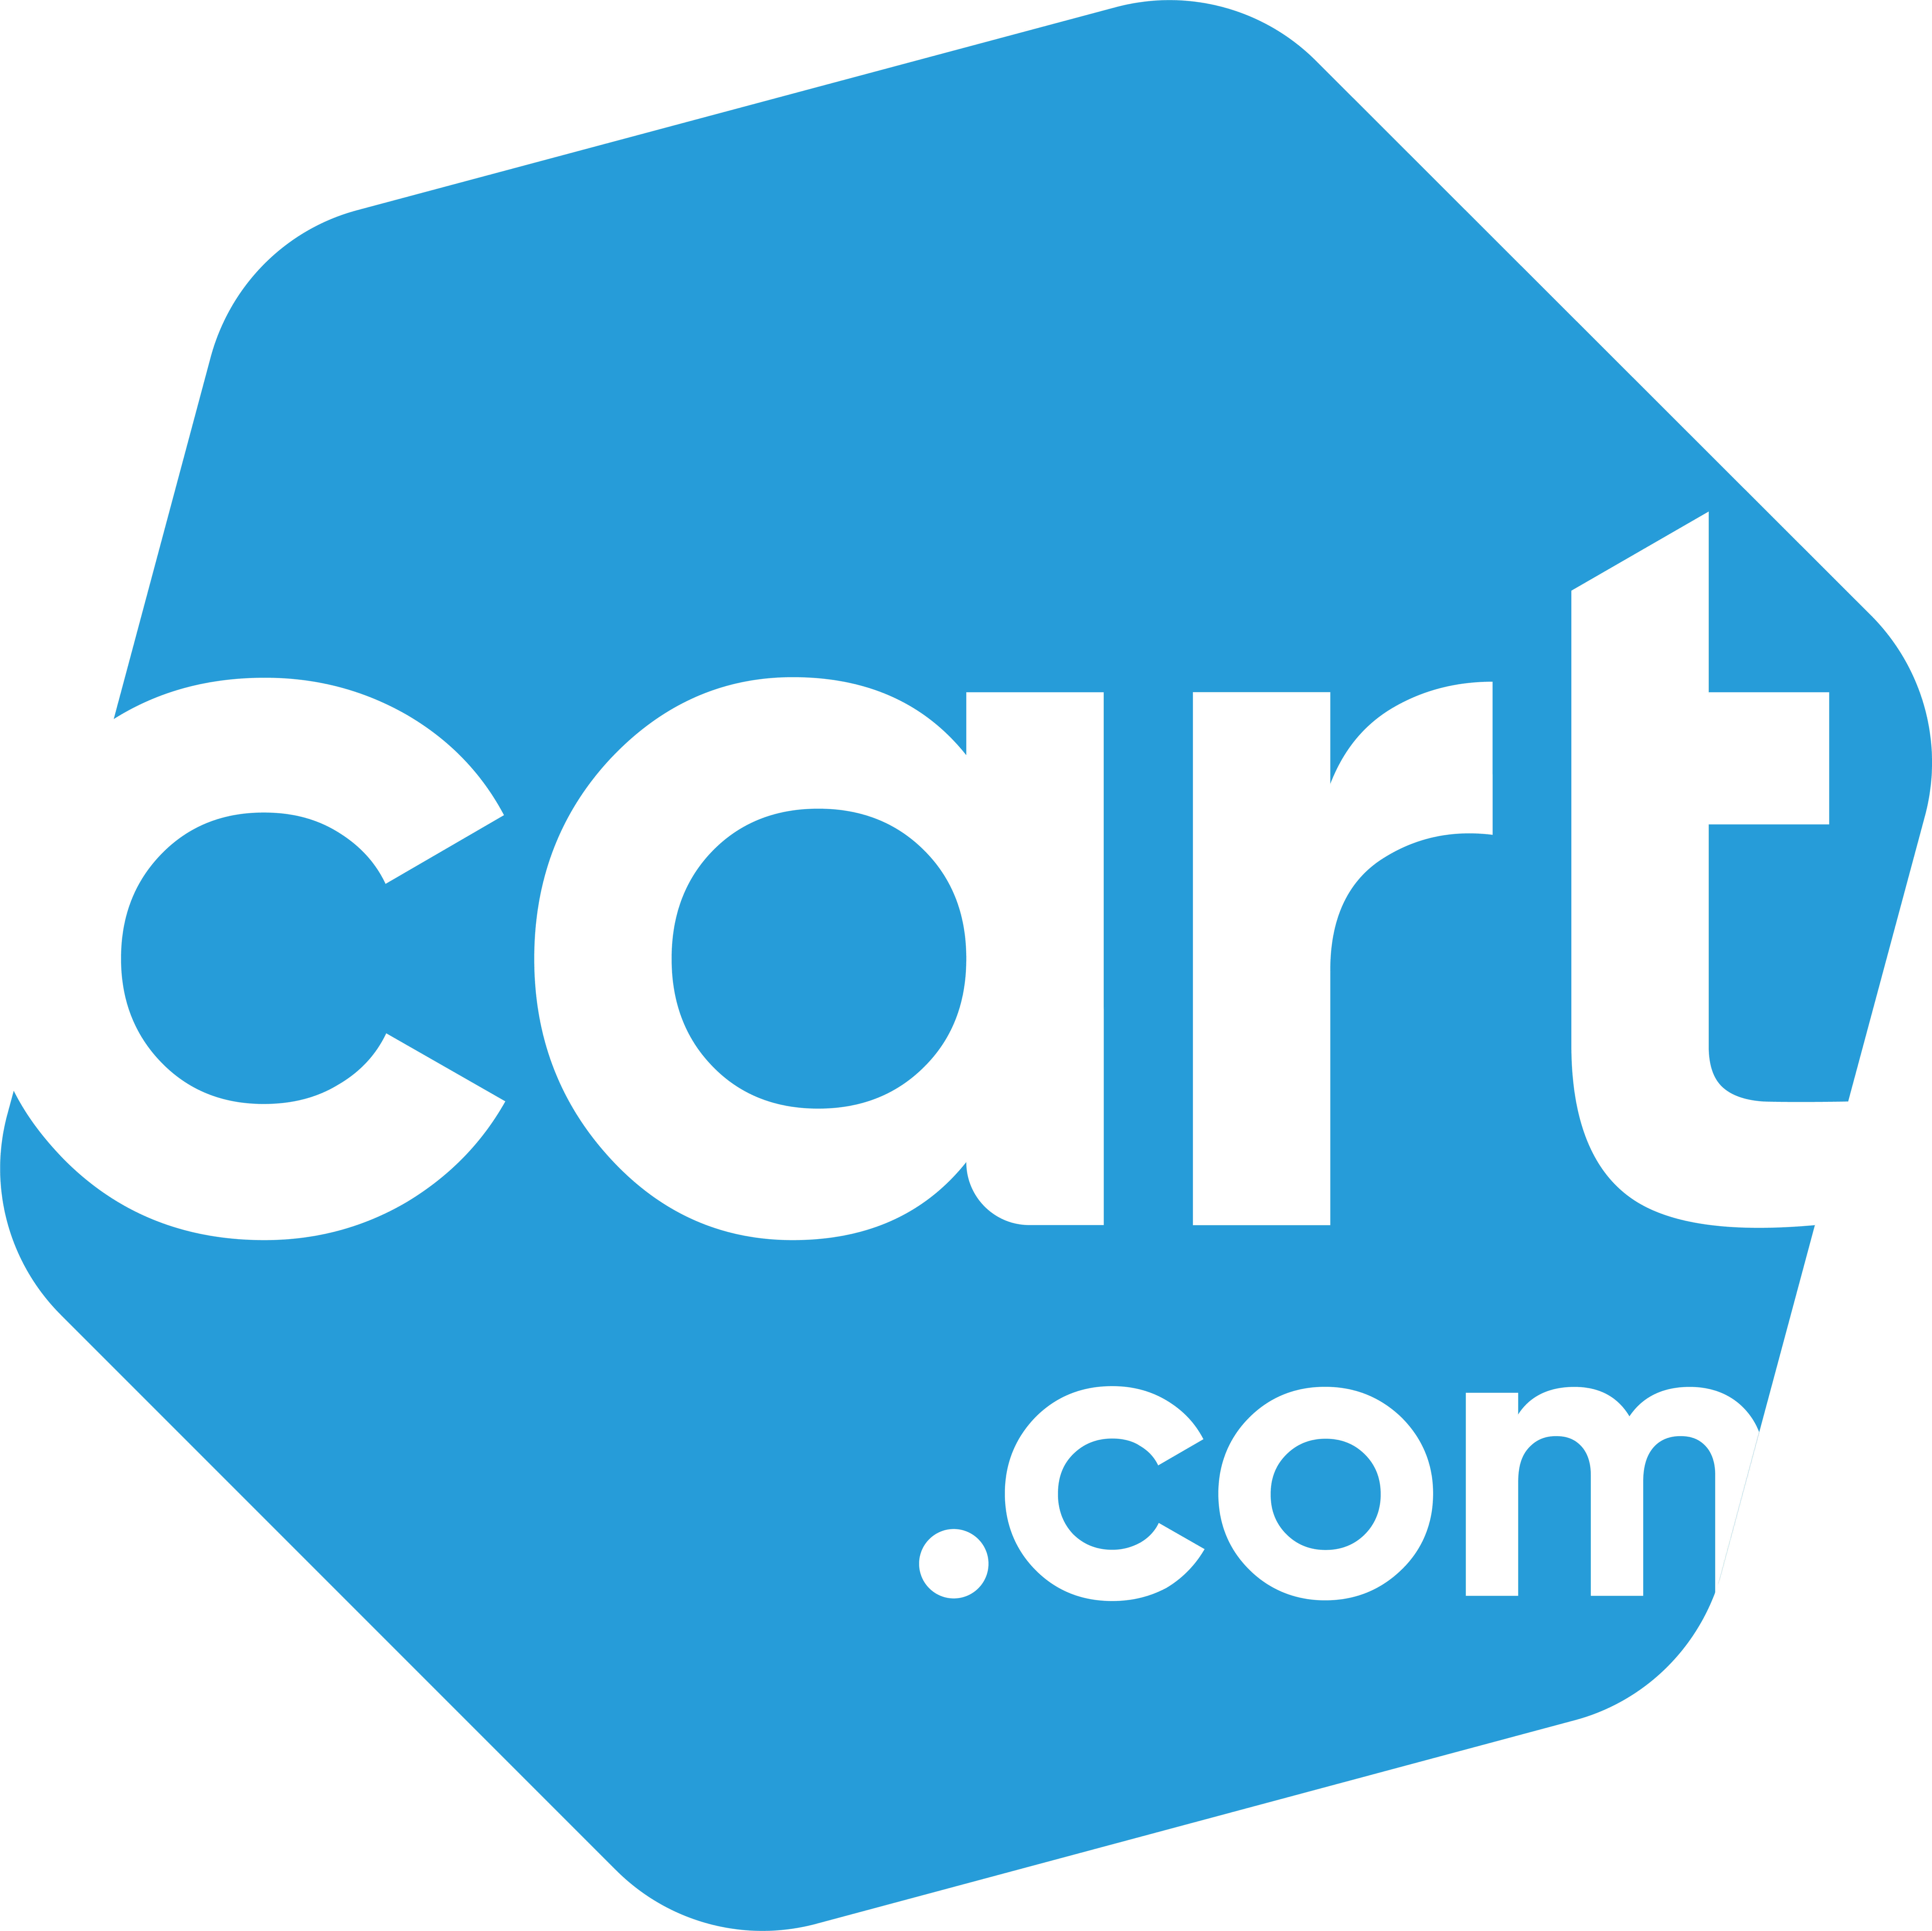 Cart.com Logo